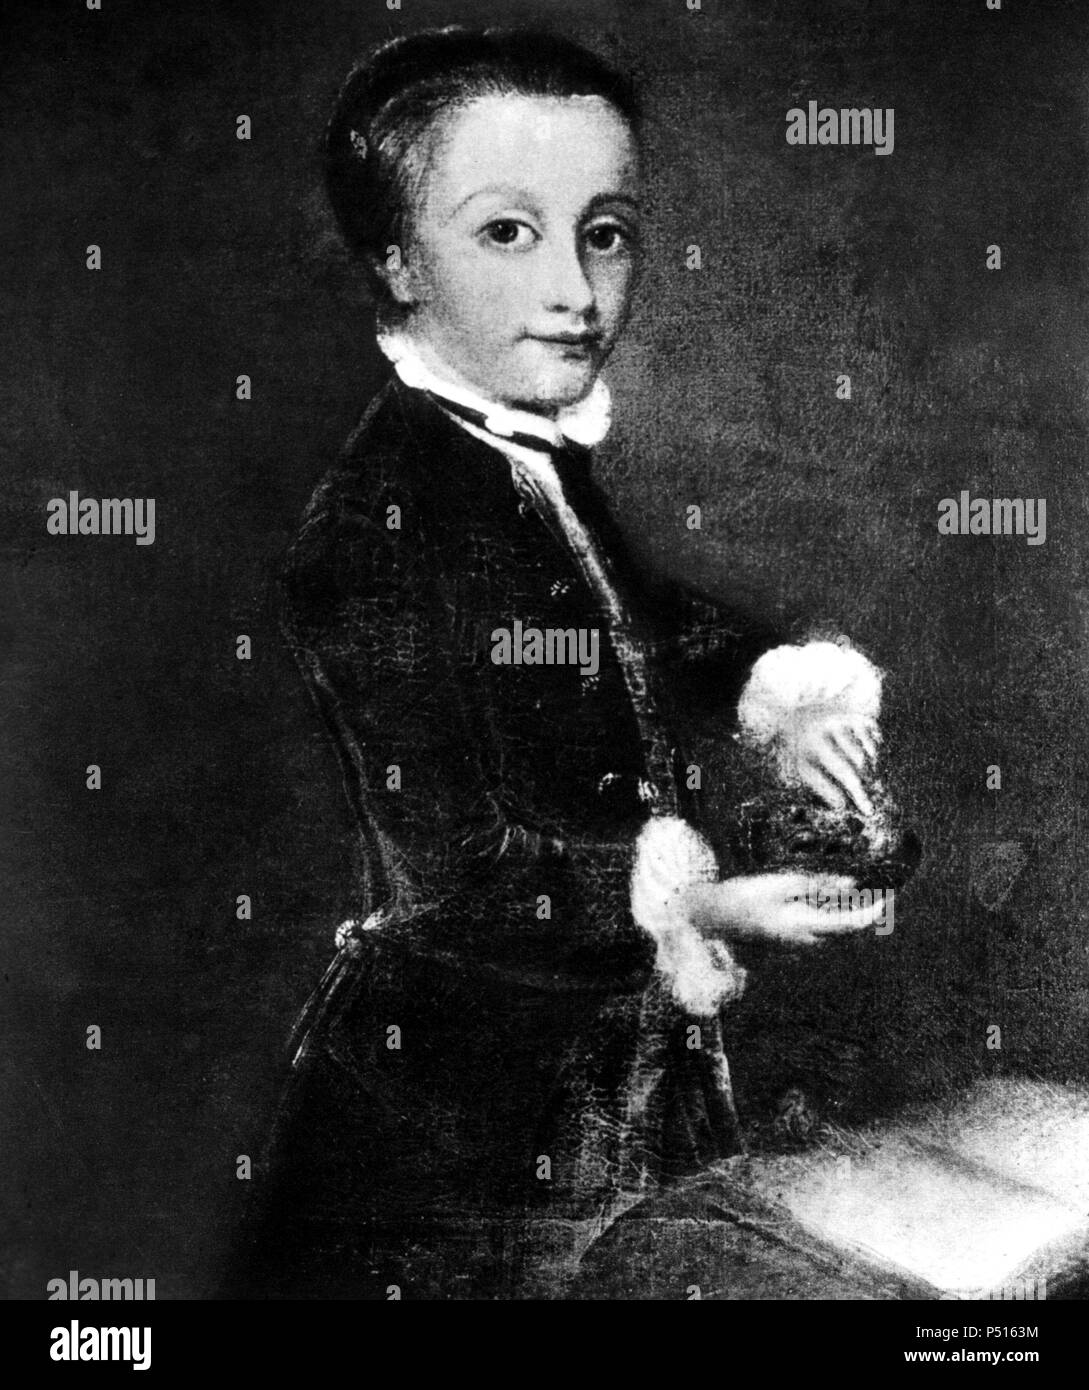 Johann Wolfgang Amadeus Mozart (Salisburgo, 1756-Viena, 1791).Compositor austríaco de música clásica. Reproducción de onu retrato de su juventud. Foto Stock